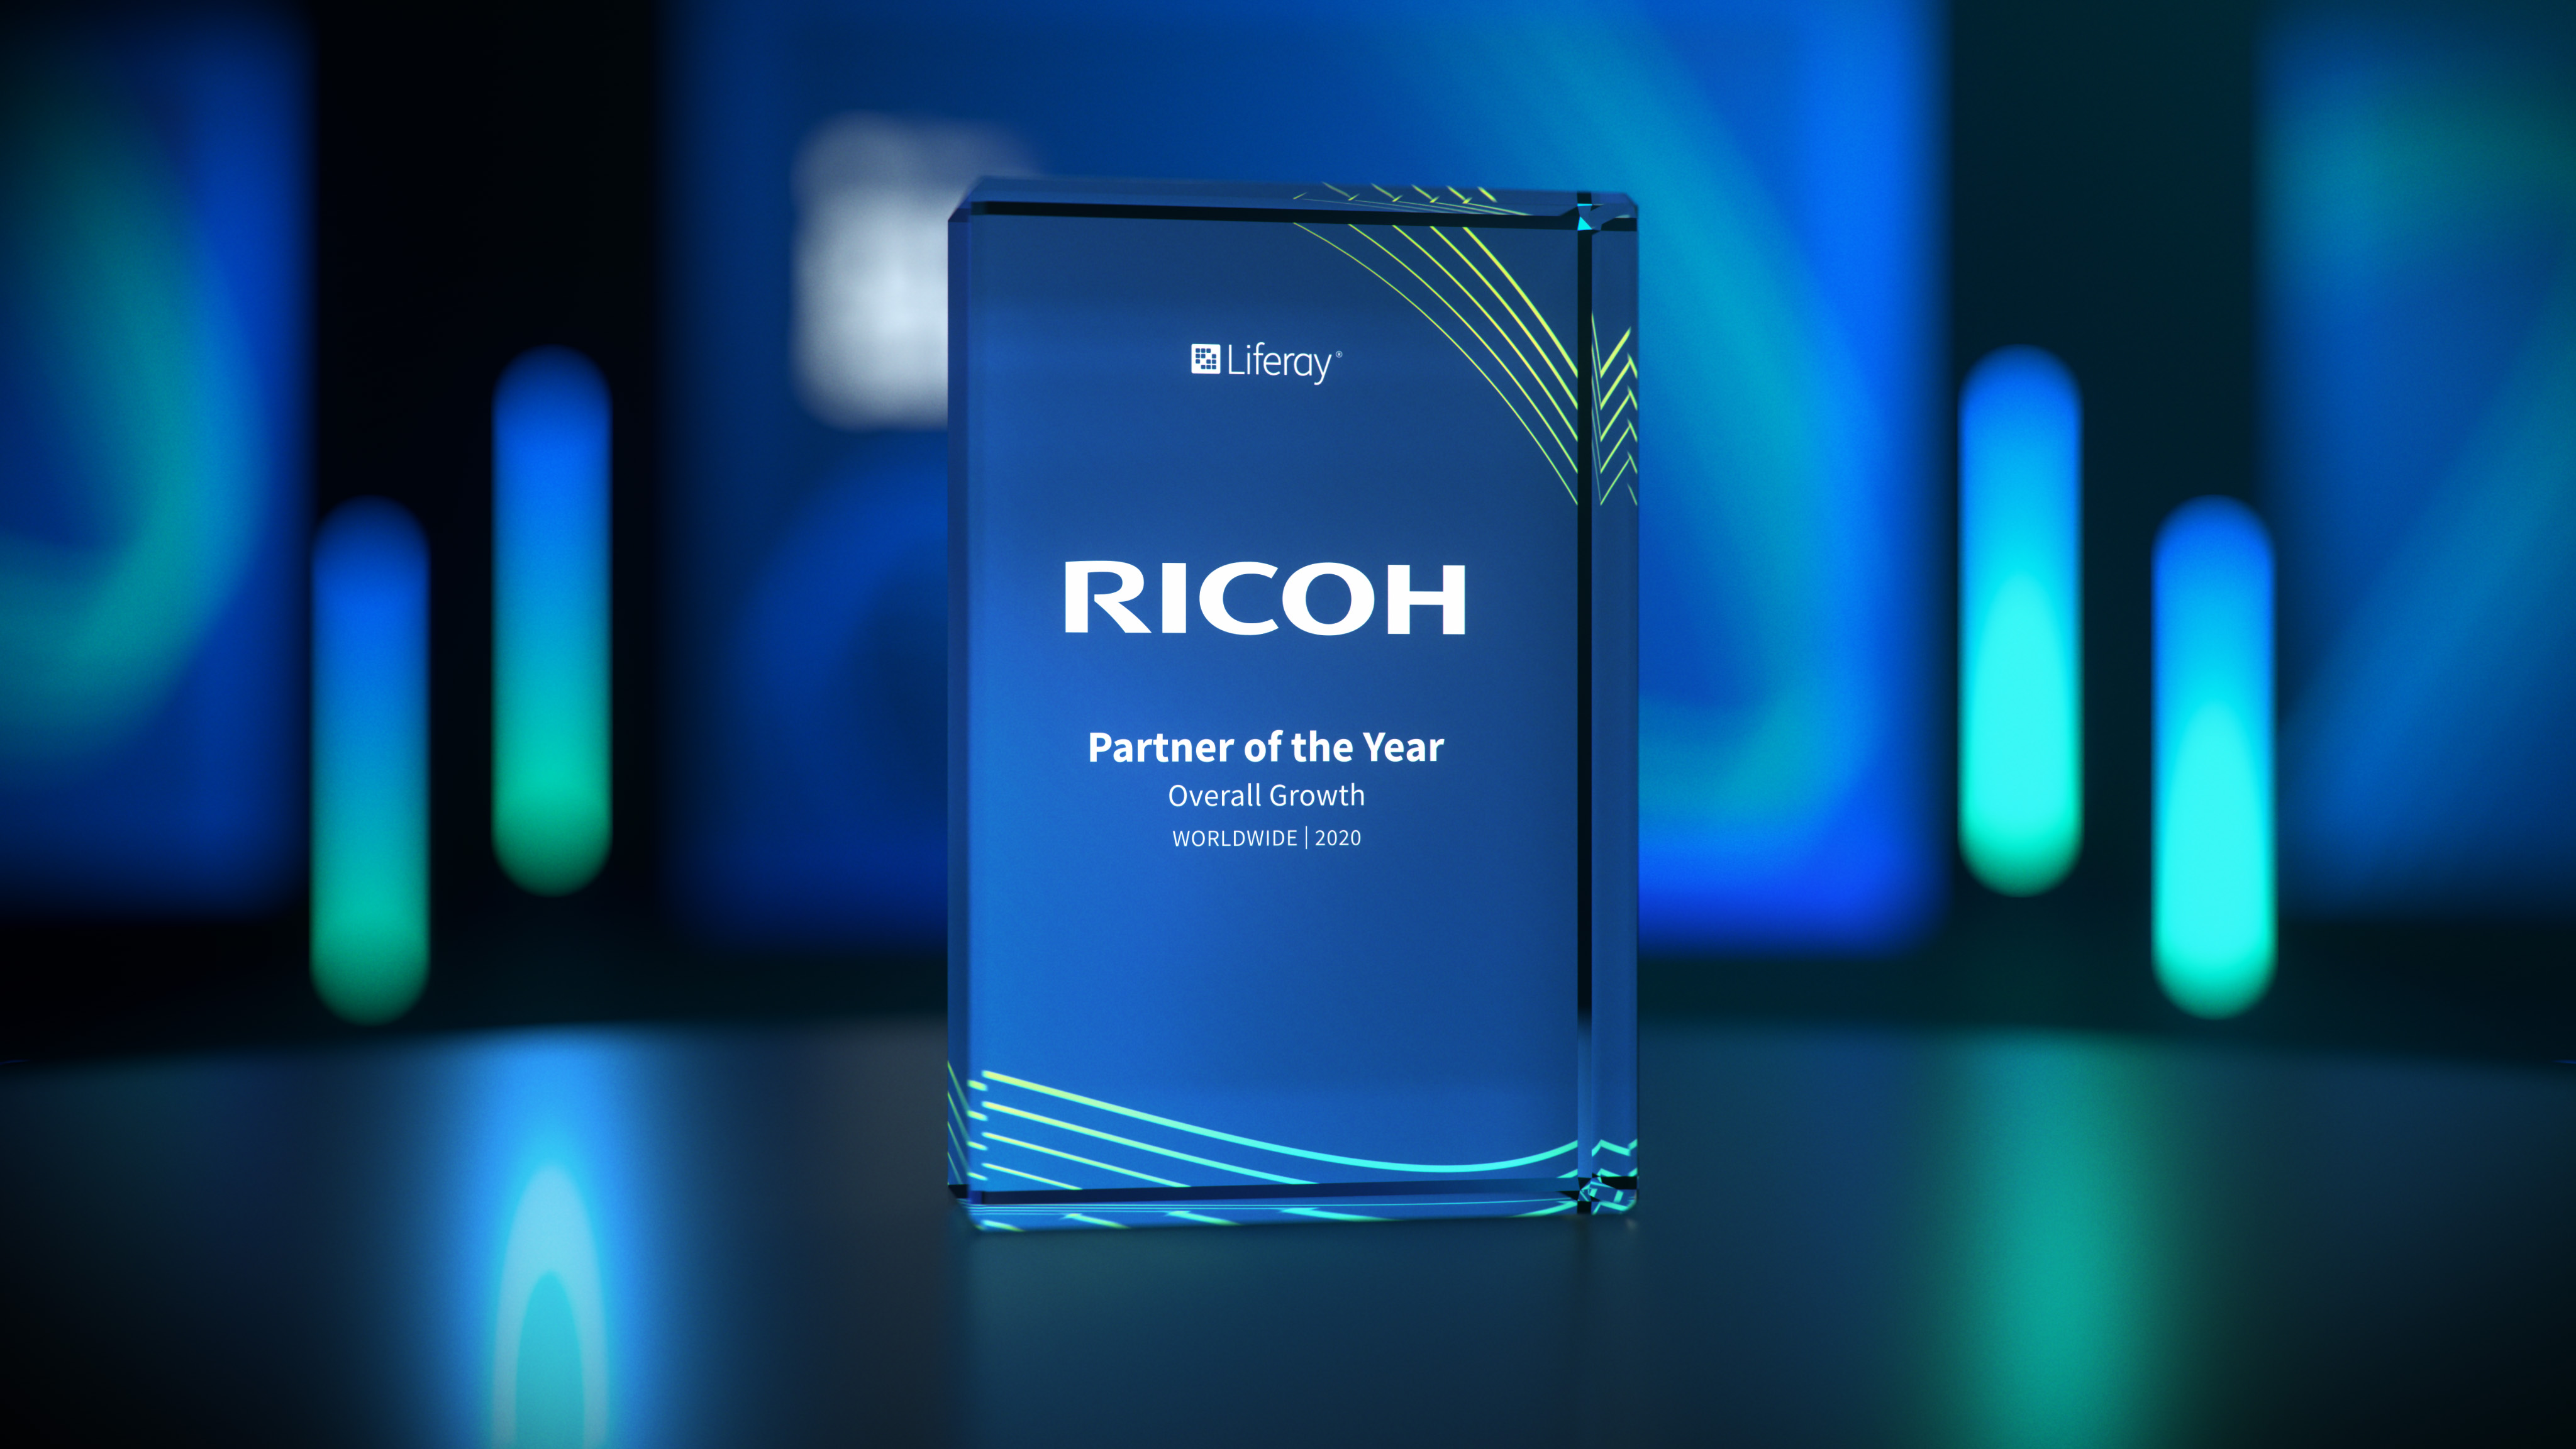 Ricoh recibe el premio Partner Global del Año de Liferay